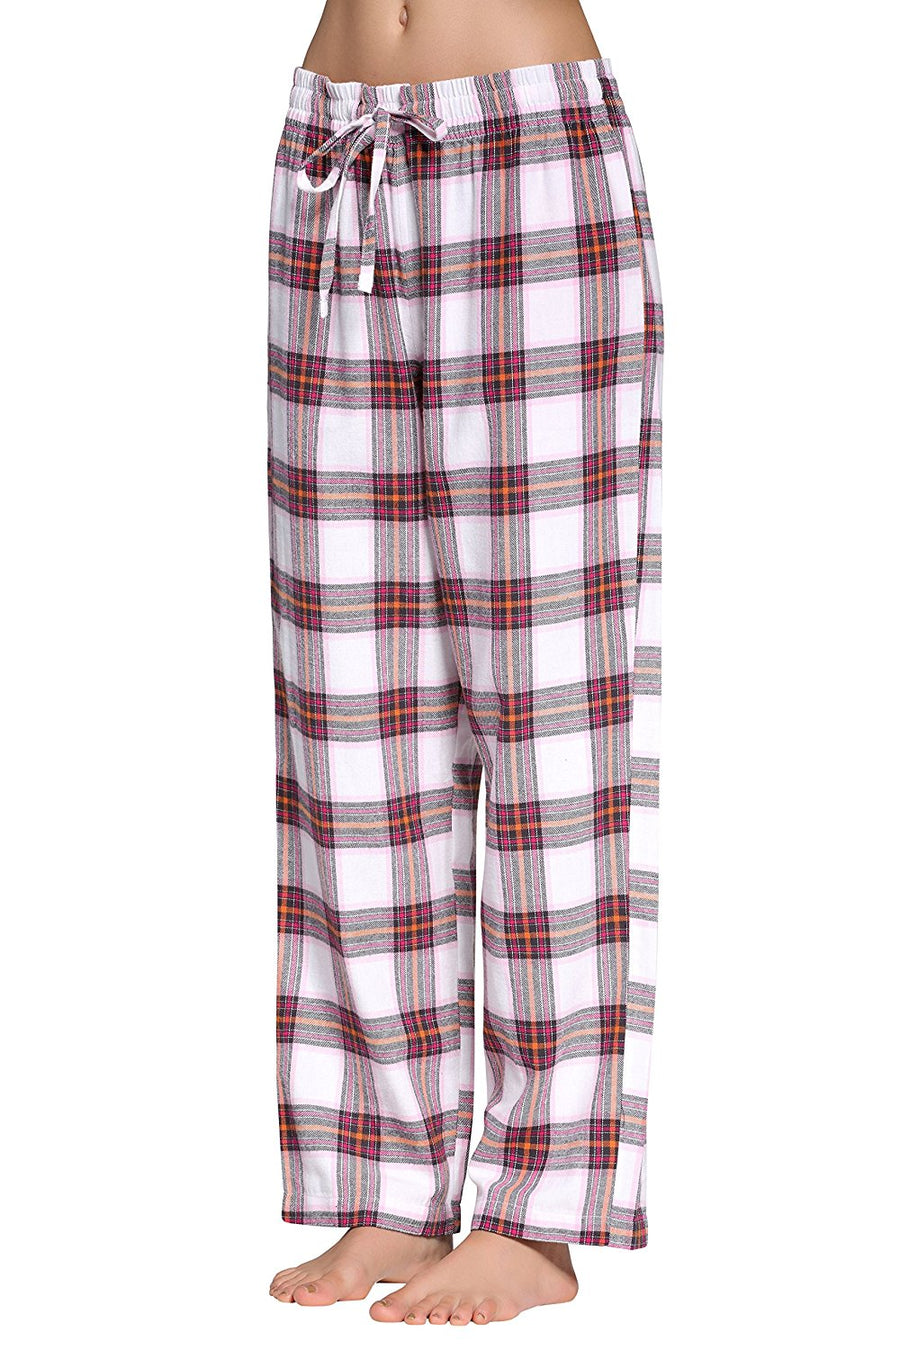 CYZ Women's 100% Cotton Super Soft Flannel Plaid Pajama/Louge Pants ...